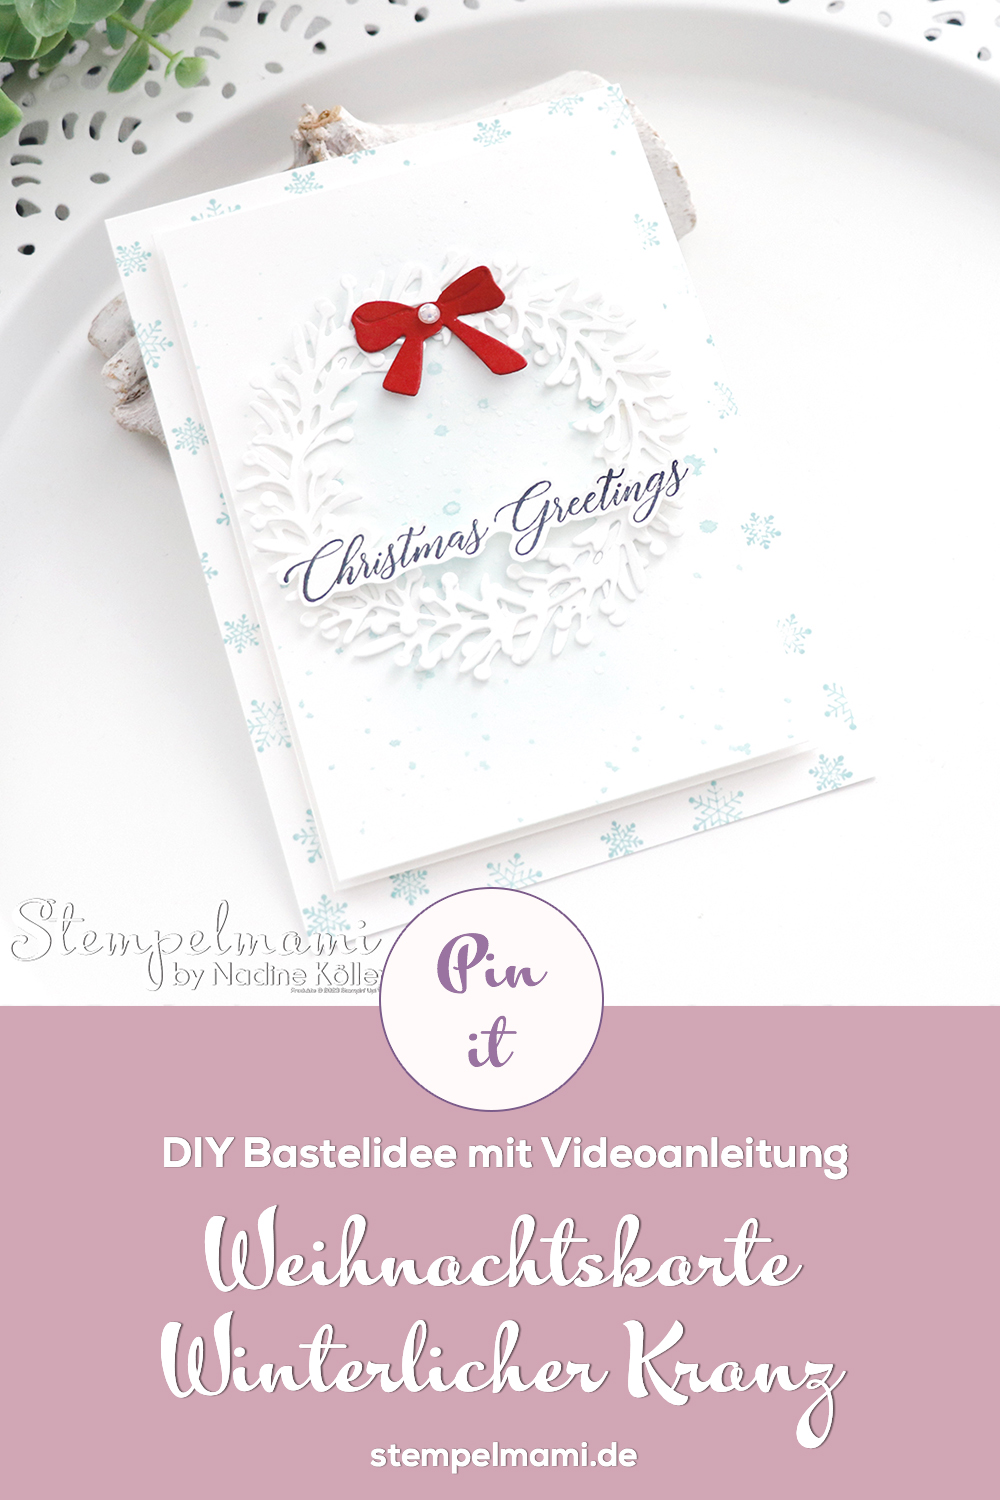 Stampin Up Video Anleitung Weihnachtskarte Winterlicher Kranz Wishes All Around Clean and Simple Card Bastelanfaenger Stempelmami